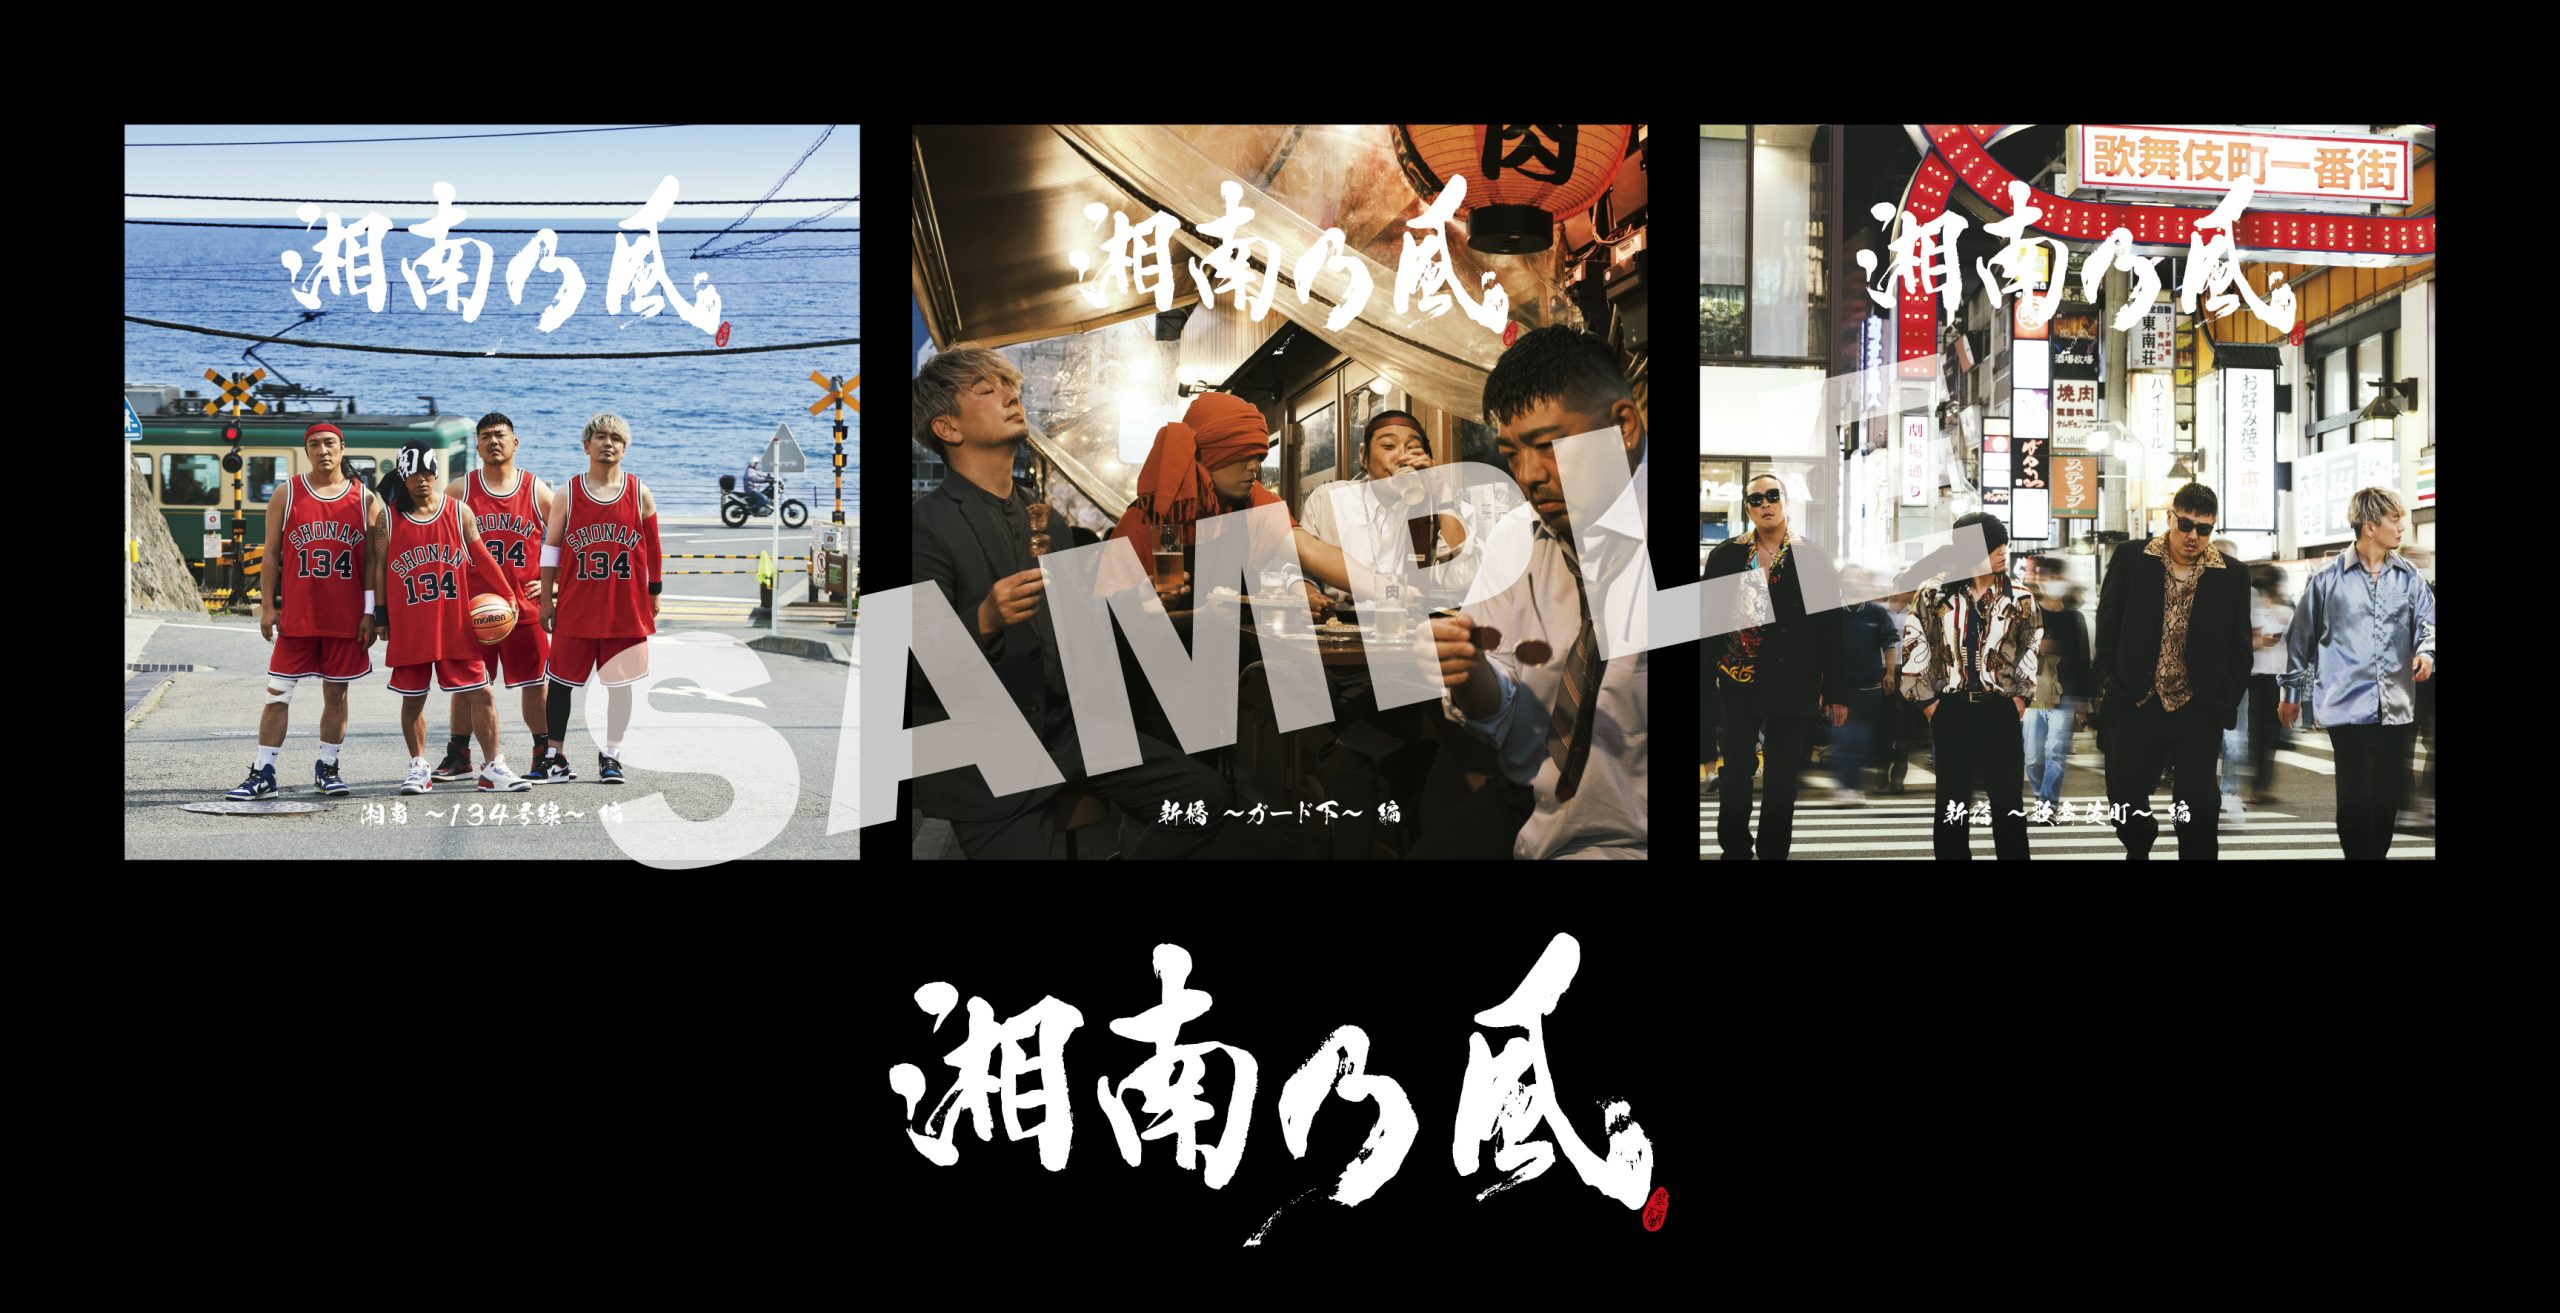 ベストアルバム「湘南乃風 〜20th Anniversary BEST〜」CD SHOP